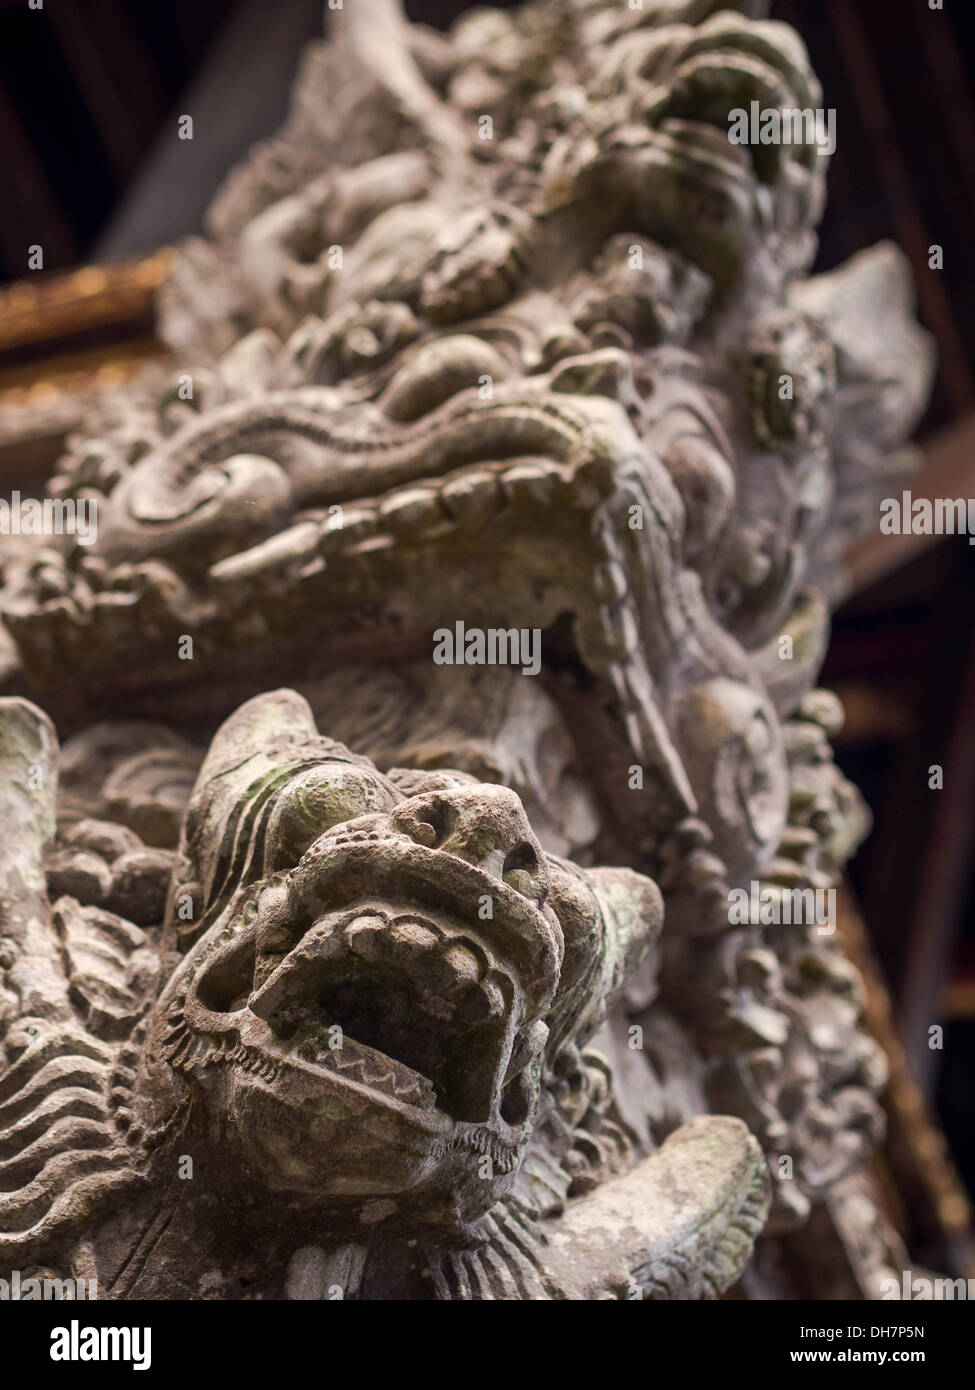 Représentant des divinités et démons sculptures de la mythologie balinaise ornent le temple Pura Dalem Agung Padangtegal à Ubud, Bali. Banque D'Images